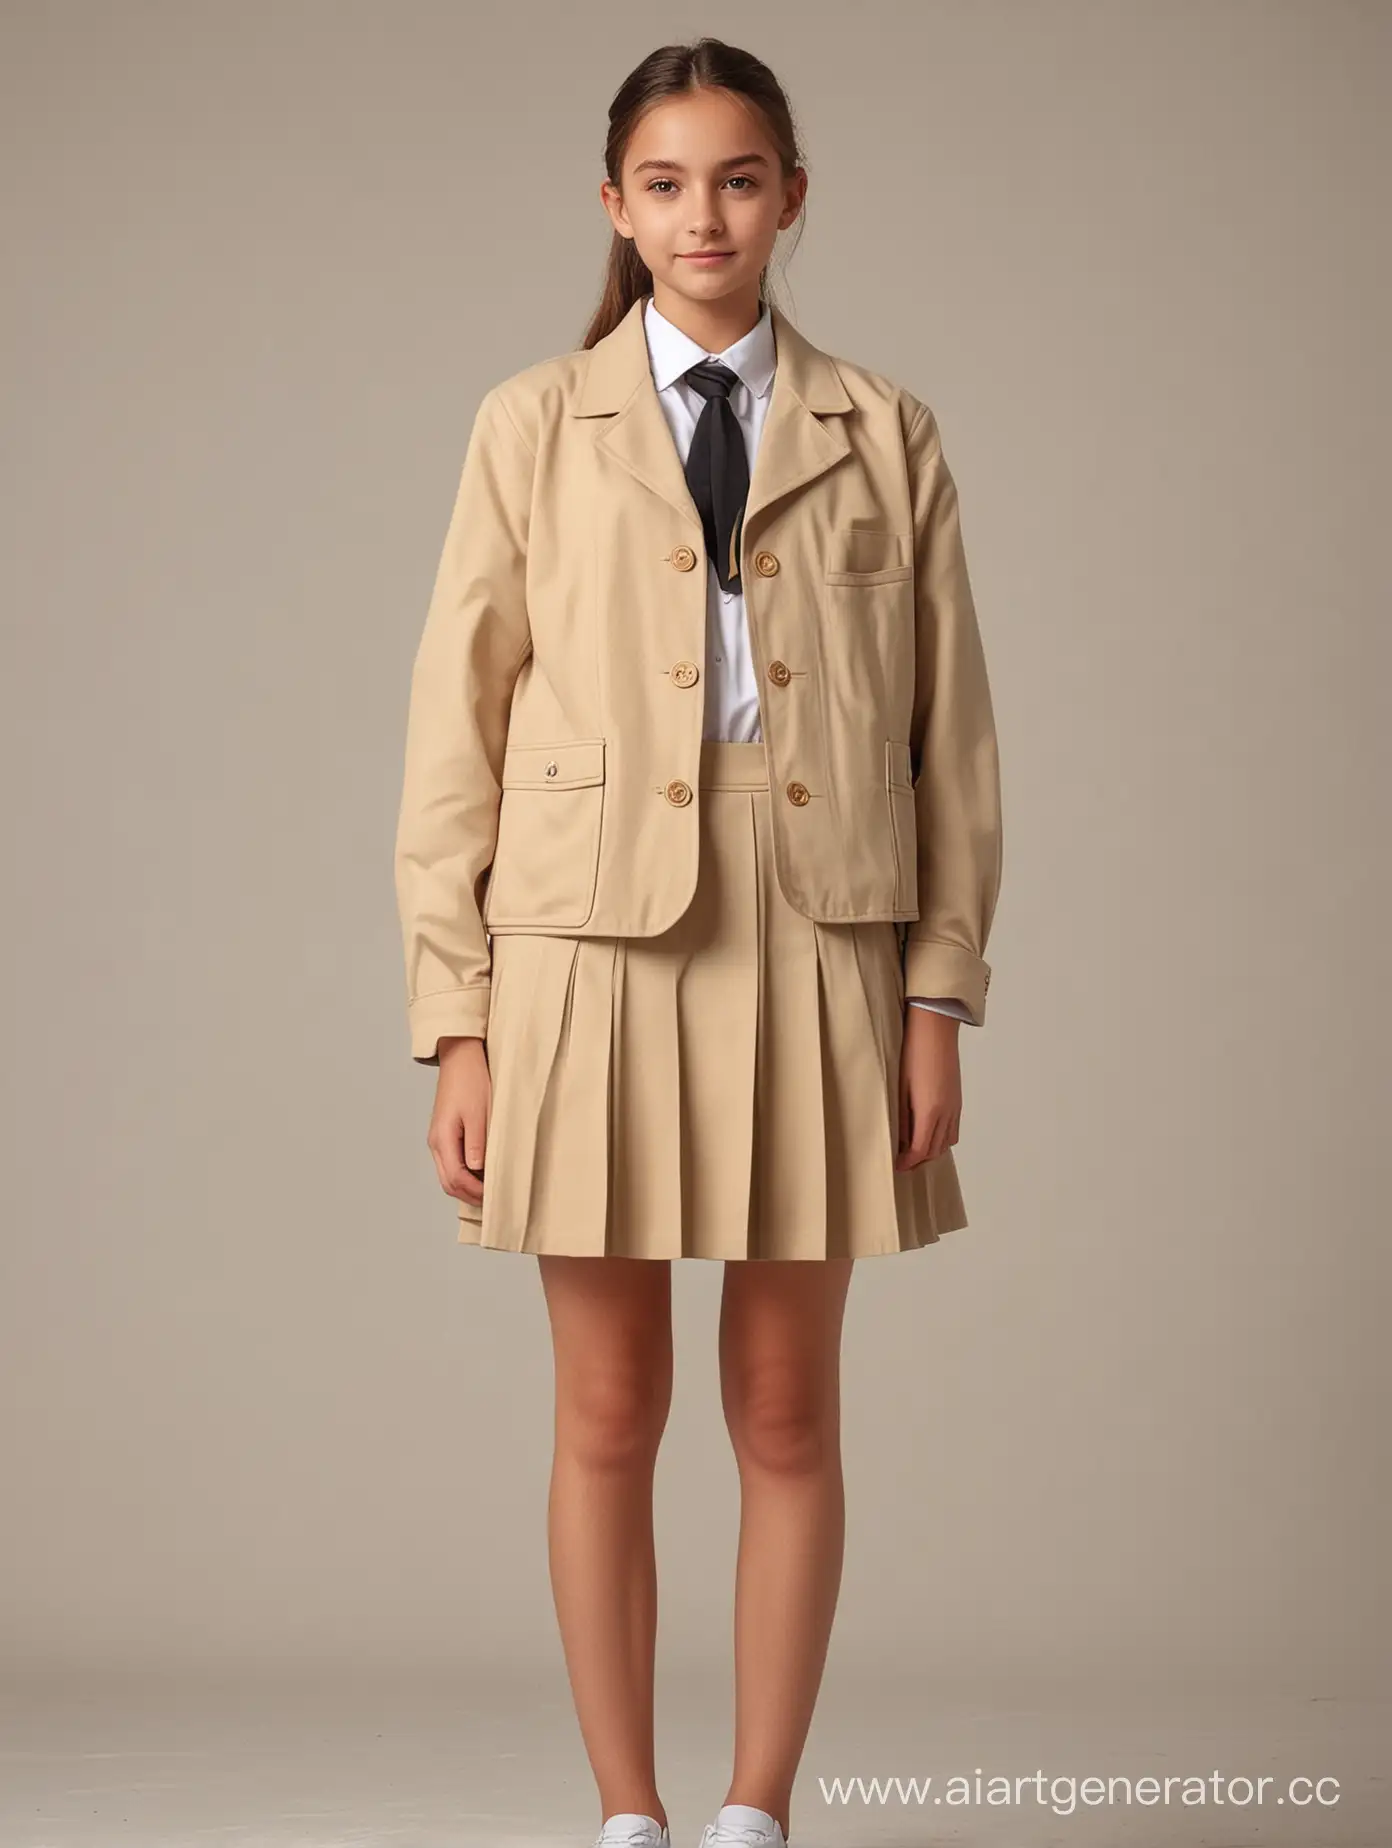 Teenager-in-Beige-School-Uniform-Jacket-Full-Length-Portrait-in-4K-Resolution